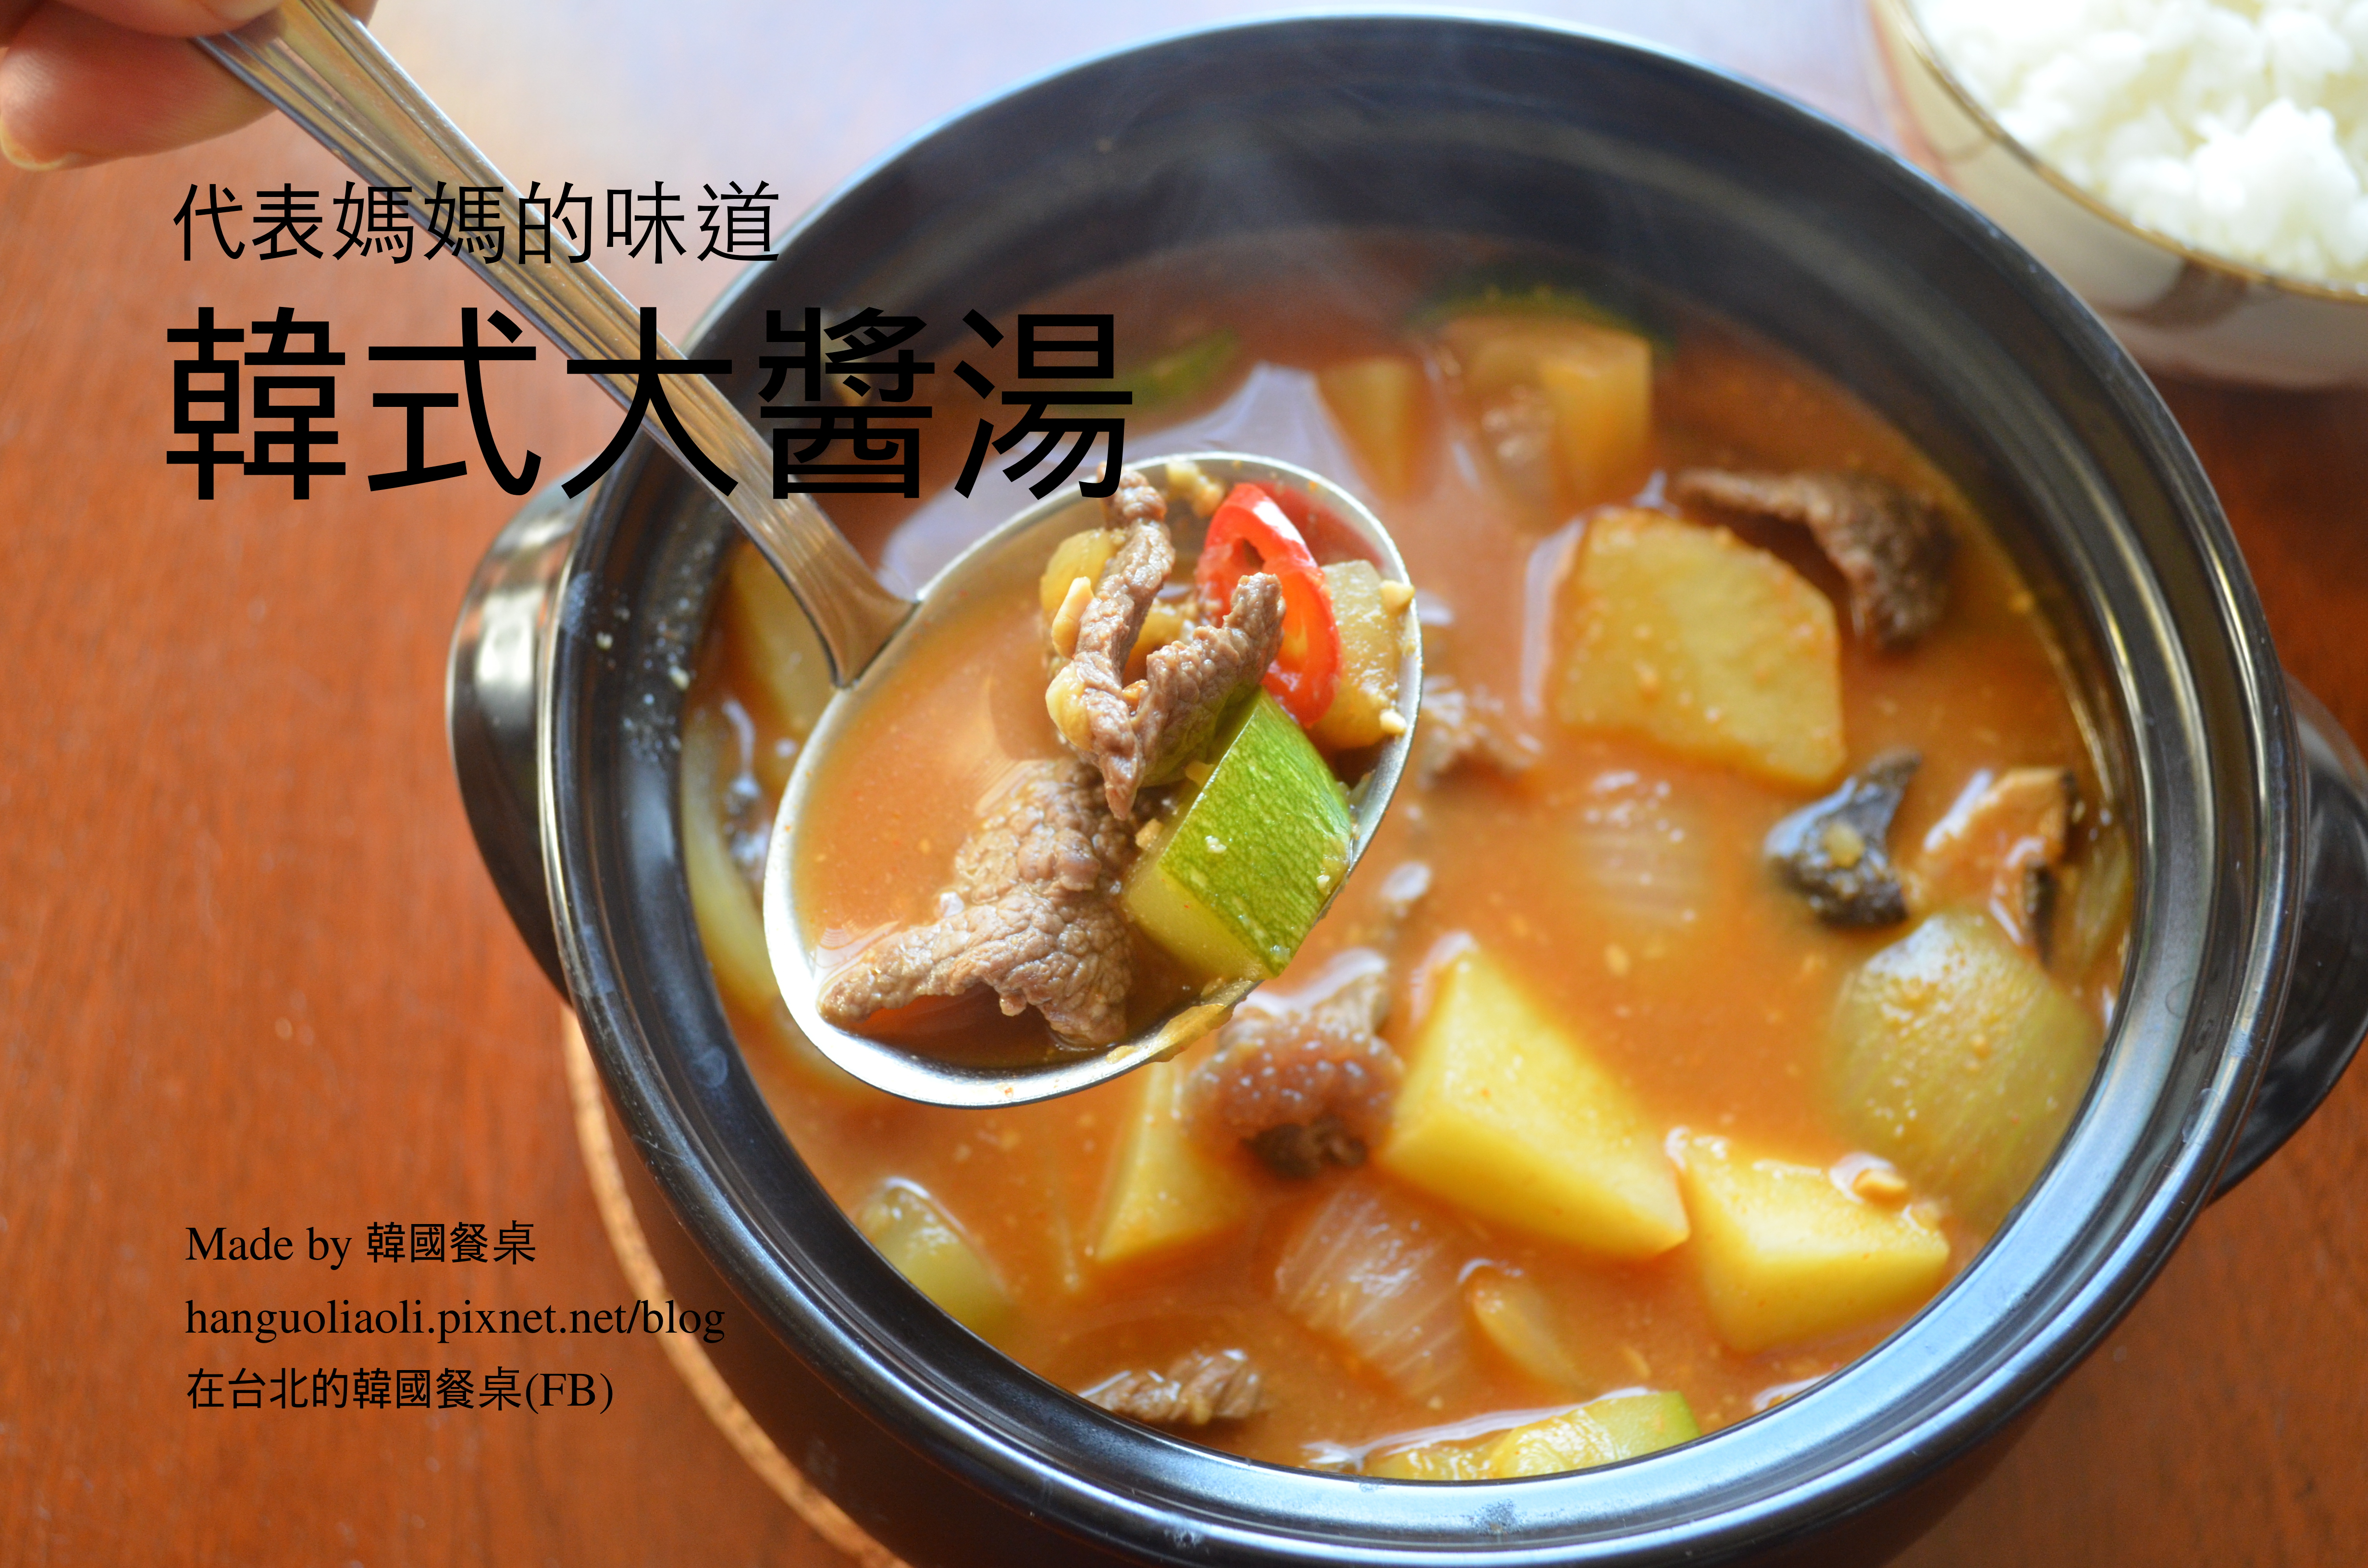  韓式牛肉大醬湯, 된장찌개 